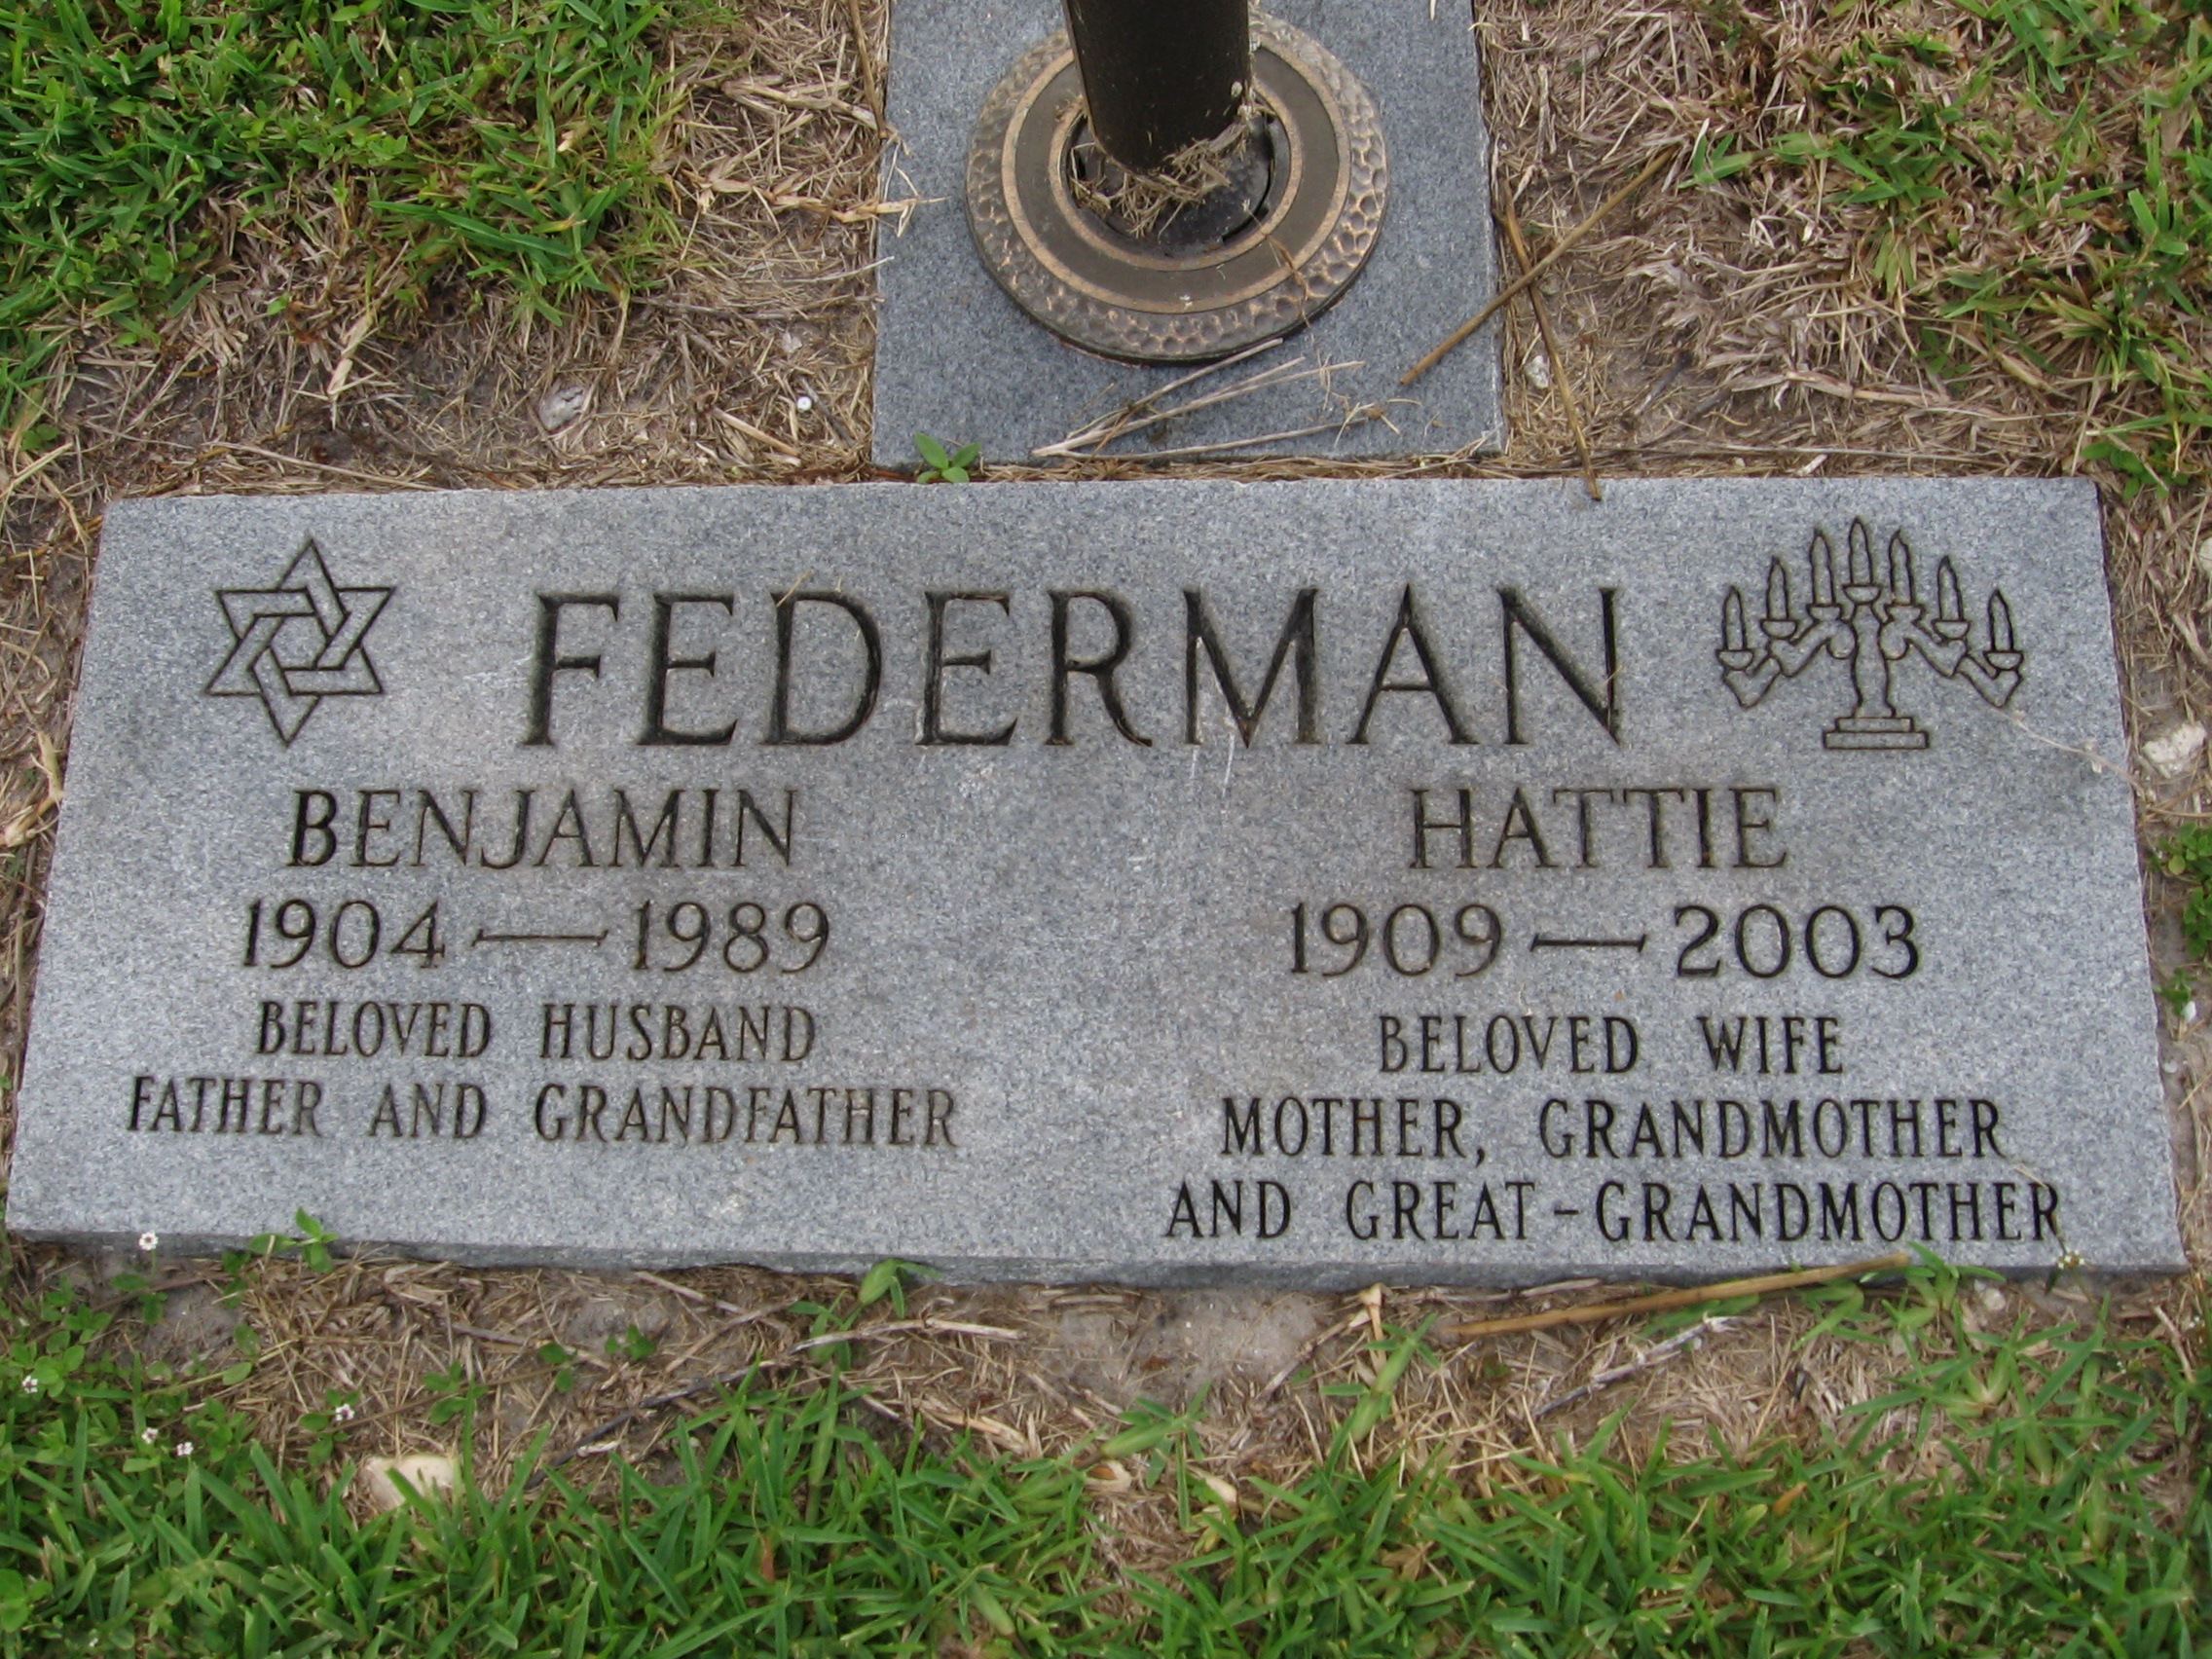 Benjamin Federman